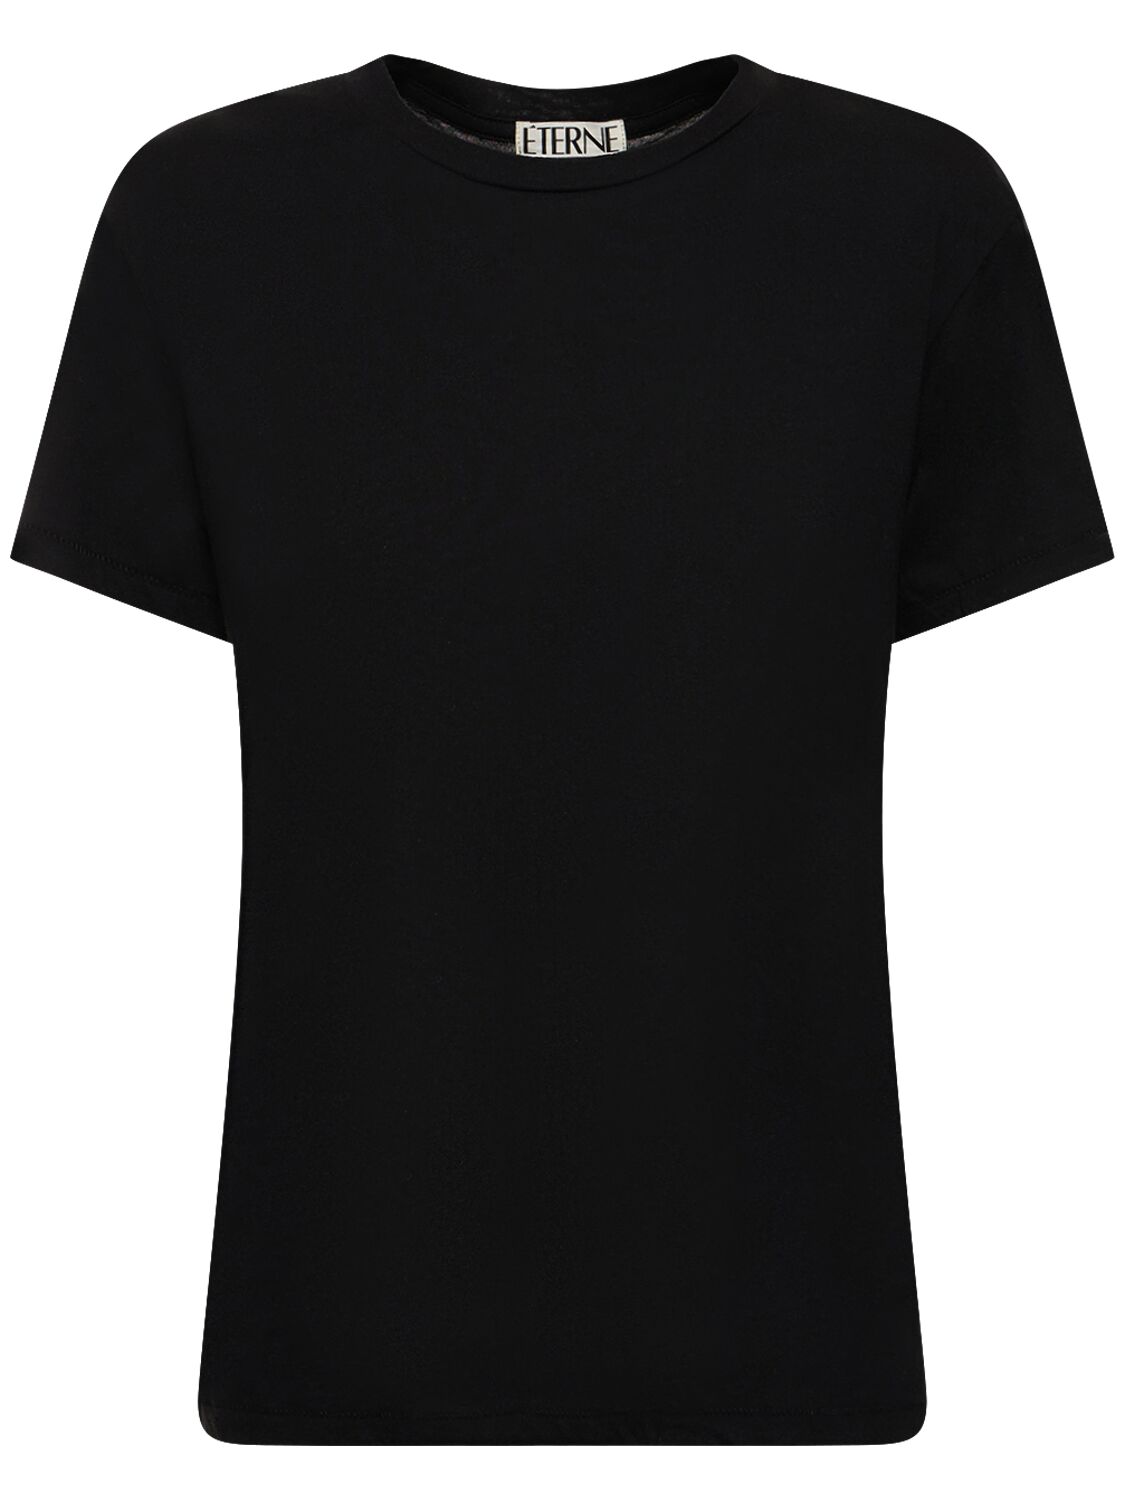 Éterne Short Sleeve Cotton T-shirt In Black